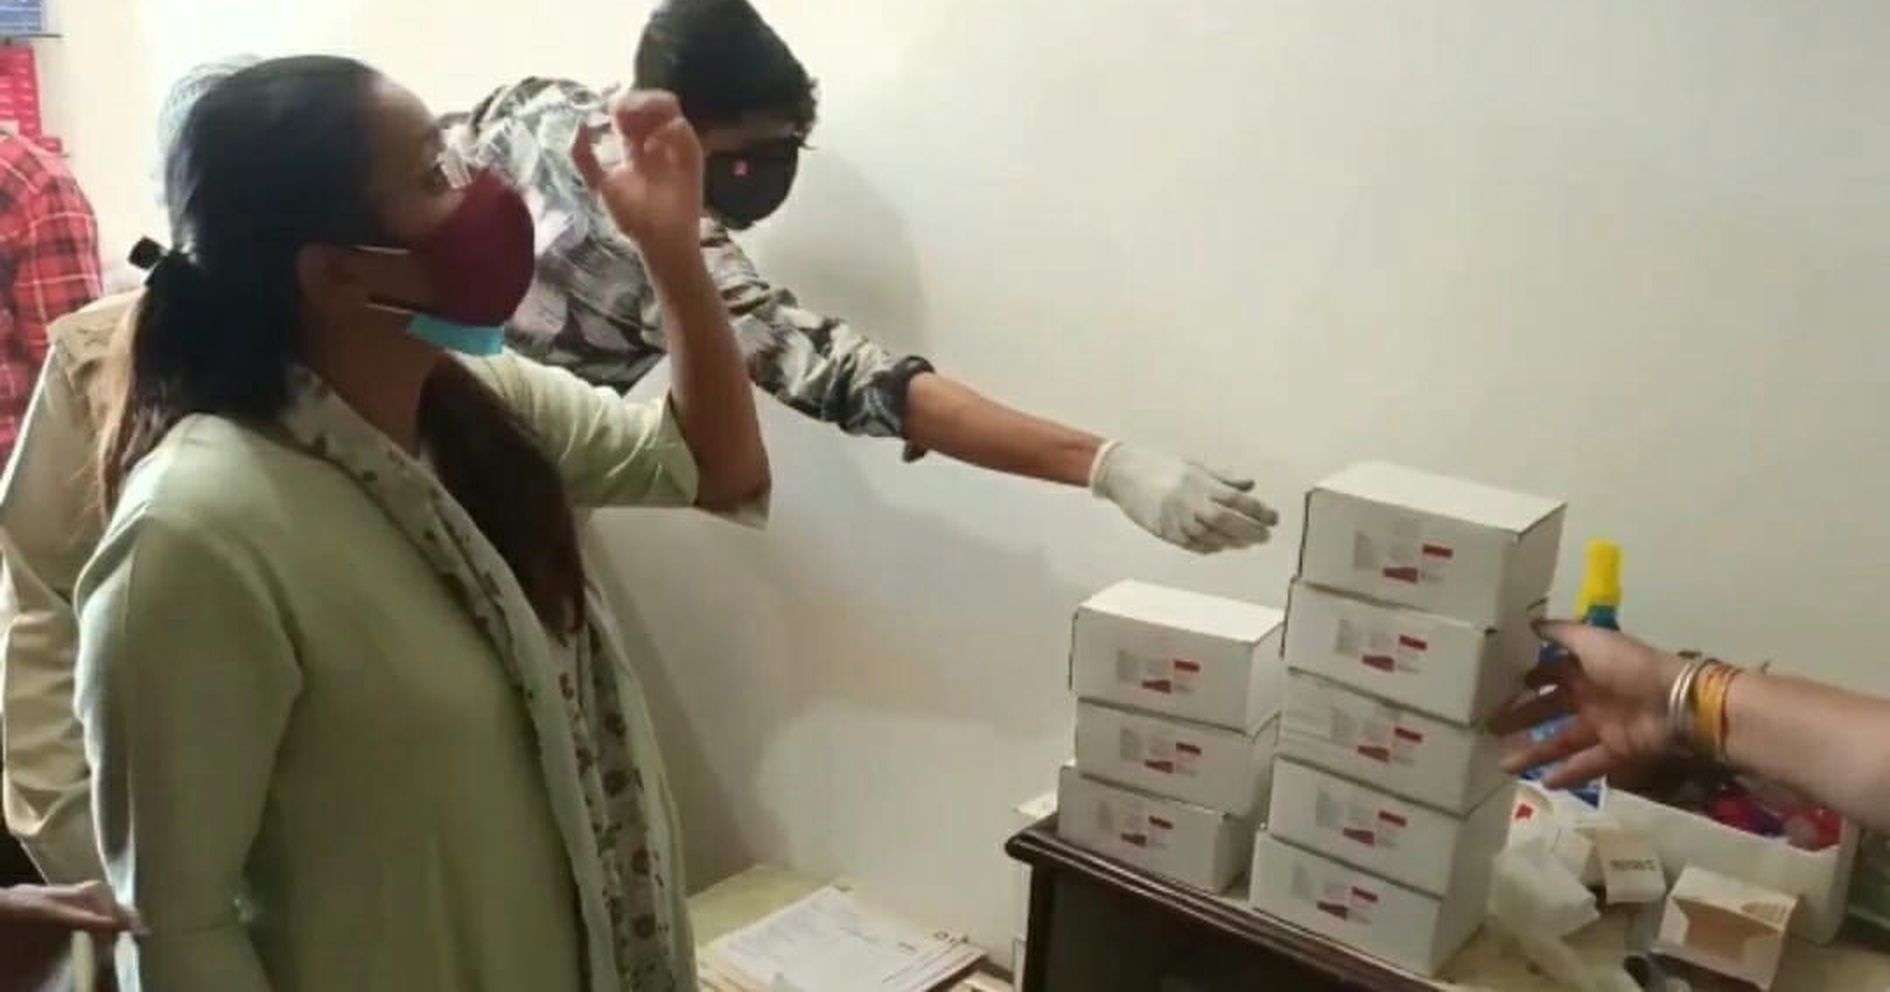 VIDEO धरावरा सीसीसी सेंटर में मरीजों की दवाईयों के हक पर डाका डाल रहे थे निजी डाक साब.... अधिकारियों ने रंगे हाथों पकड़ लिया